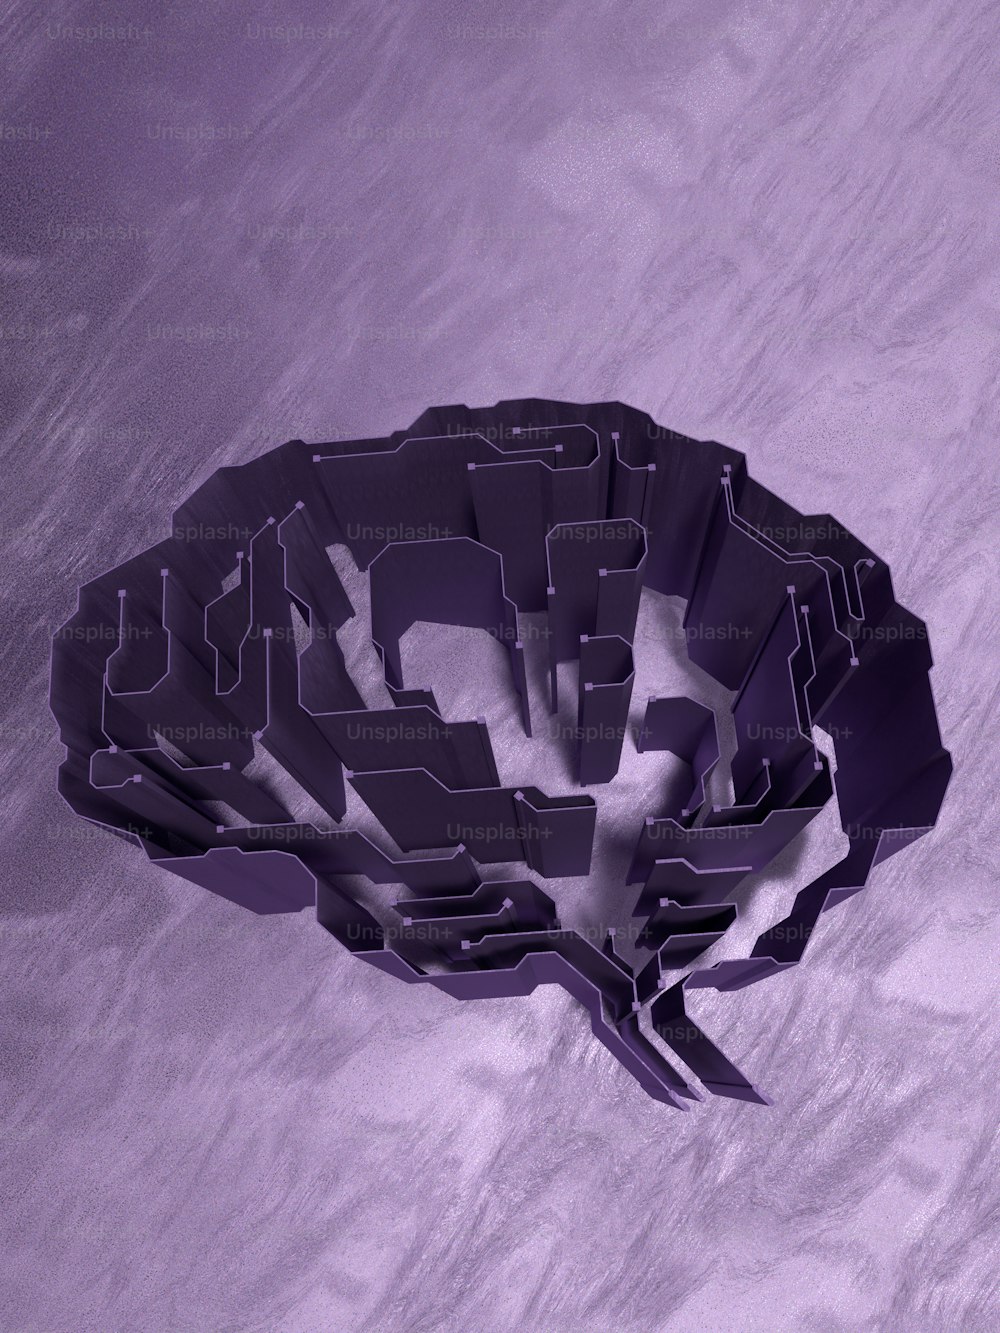 uma imagem gerada por computador de um cérebro em um fundo roxo